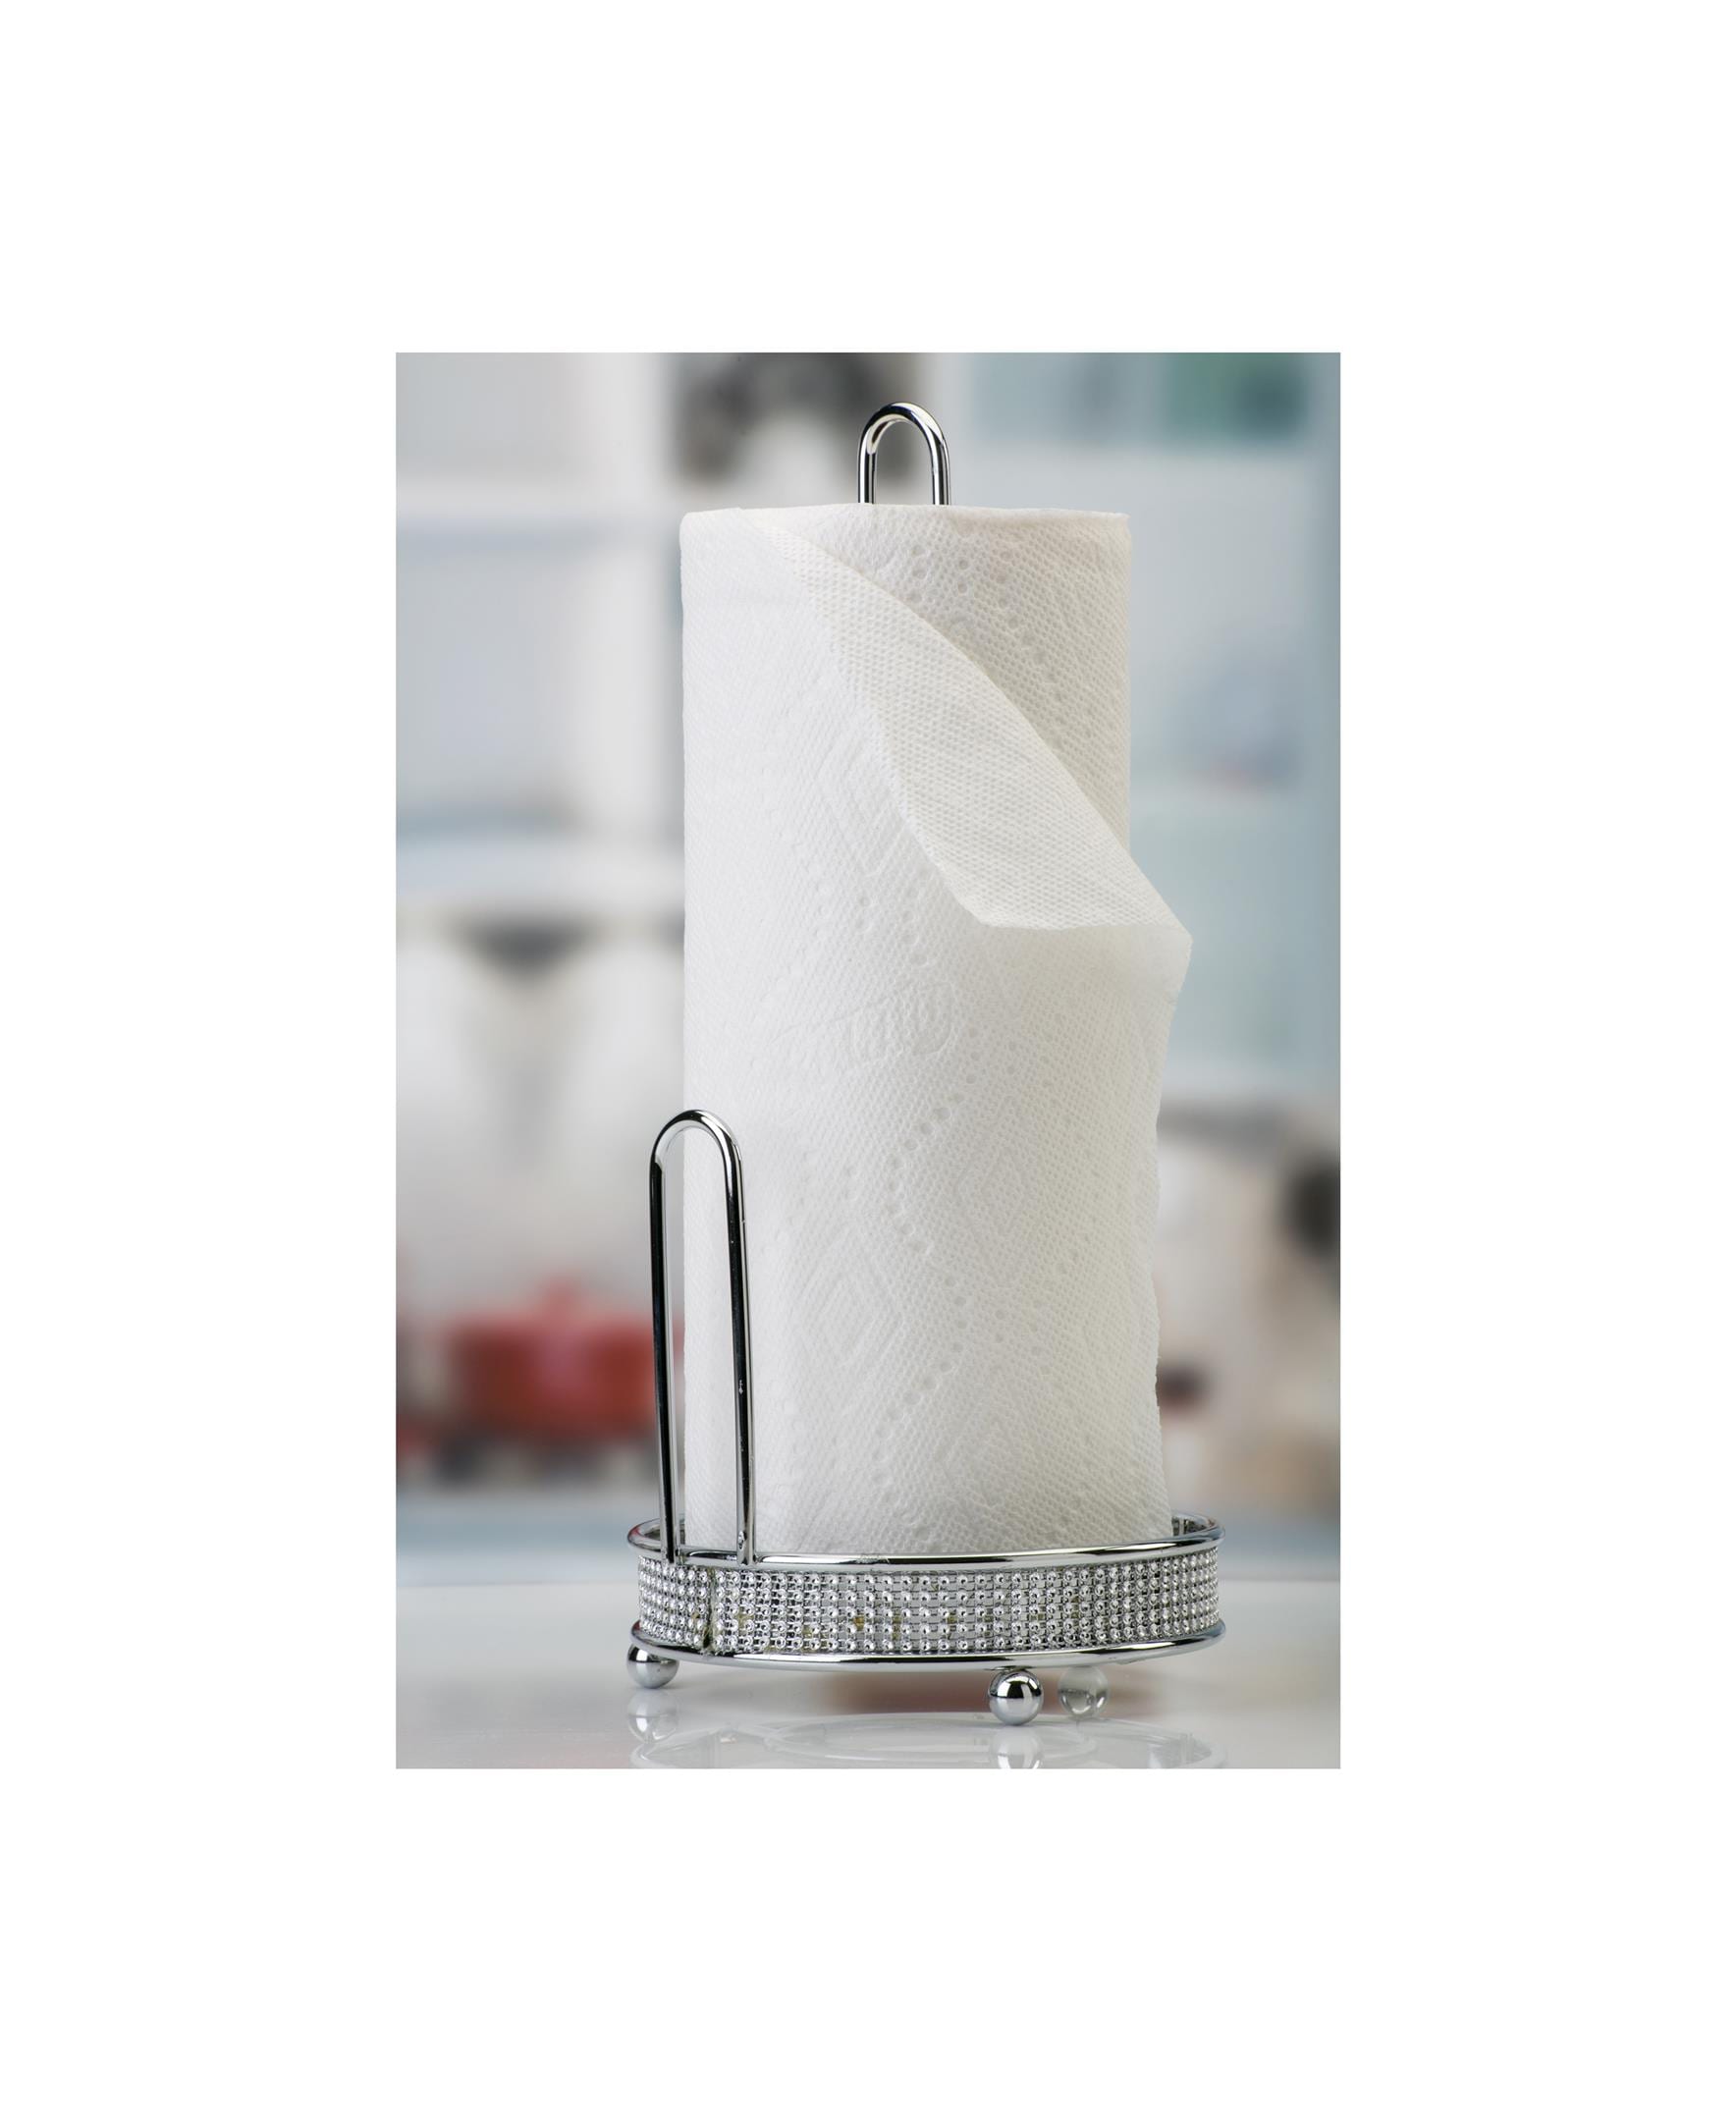 Kitchen Details Metal Chrome Paper Towel Holder